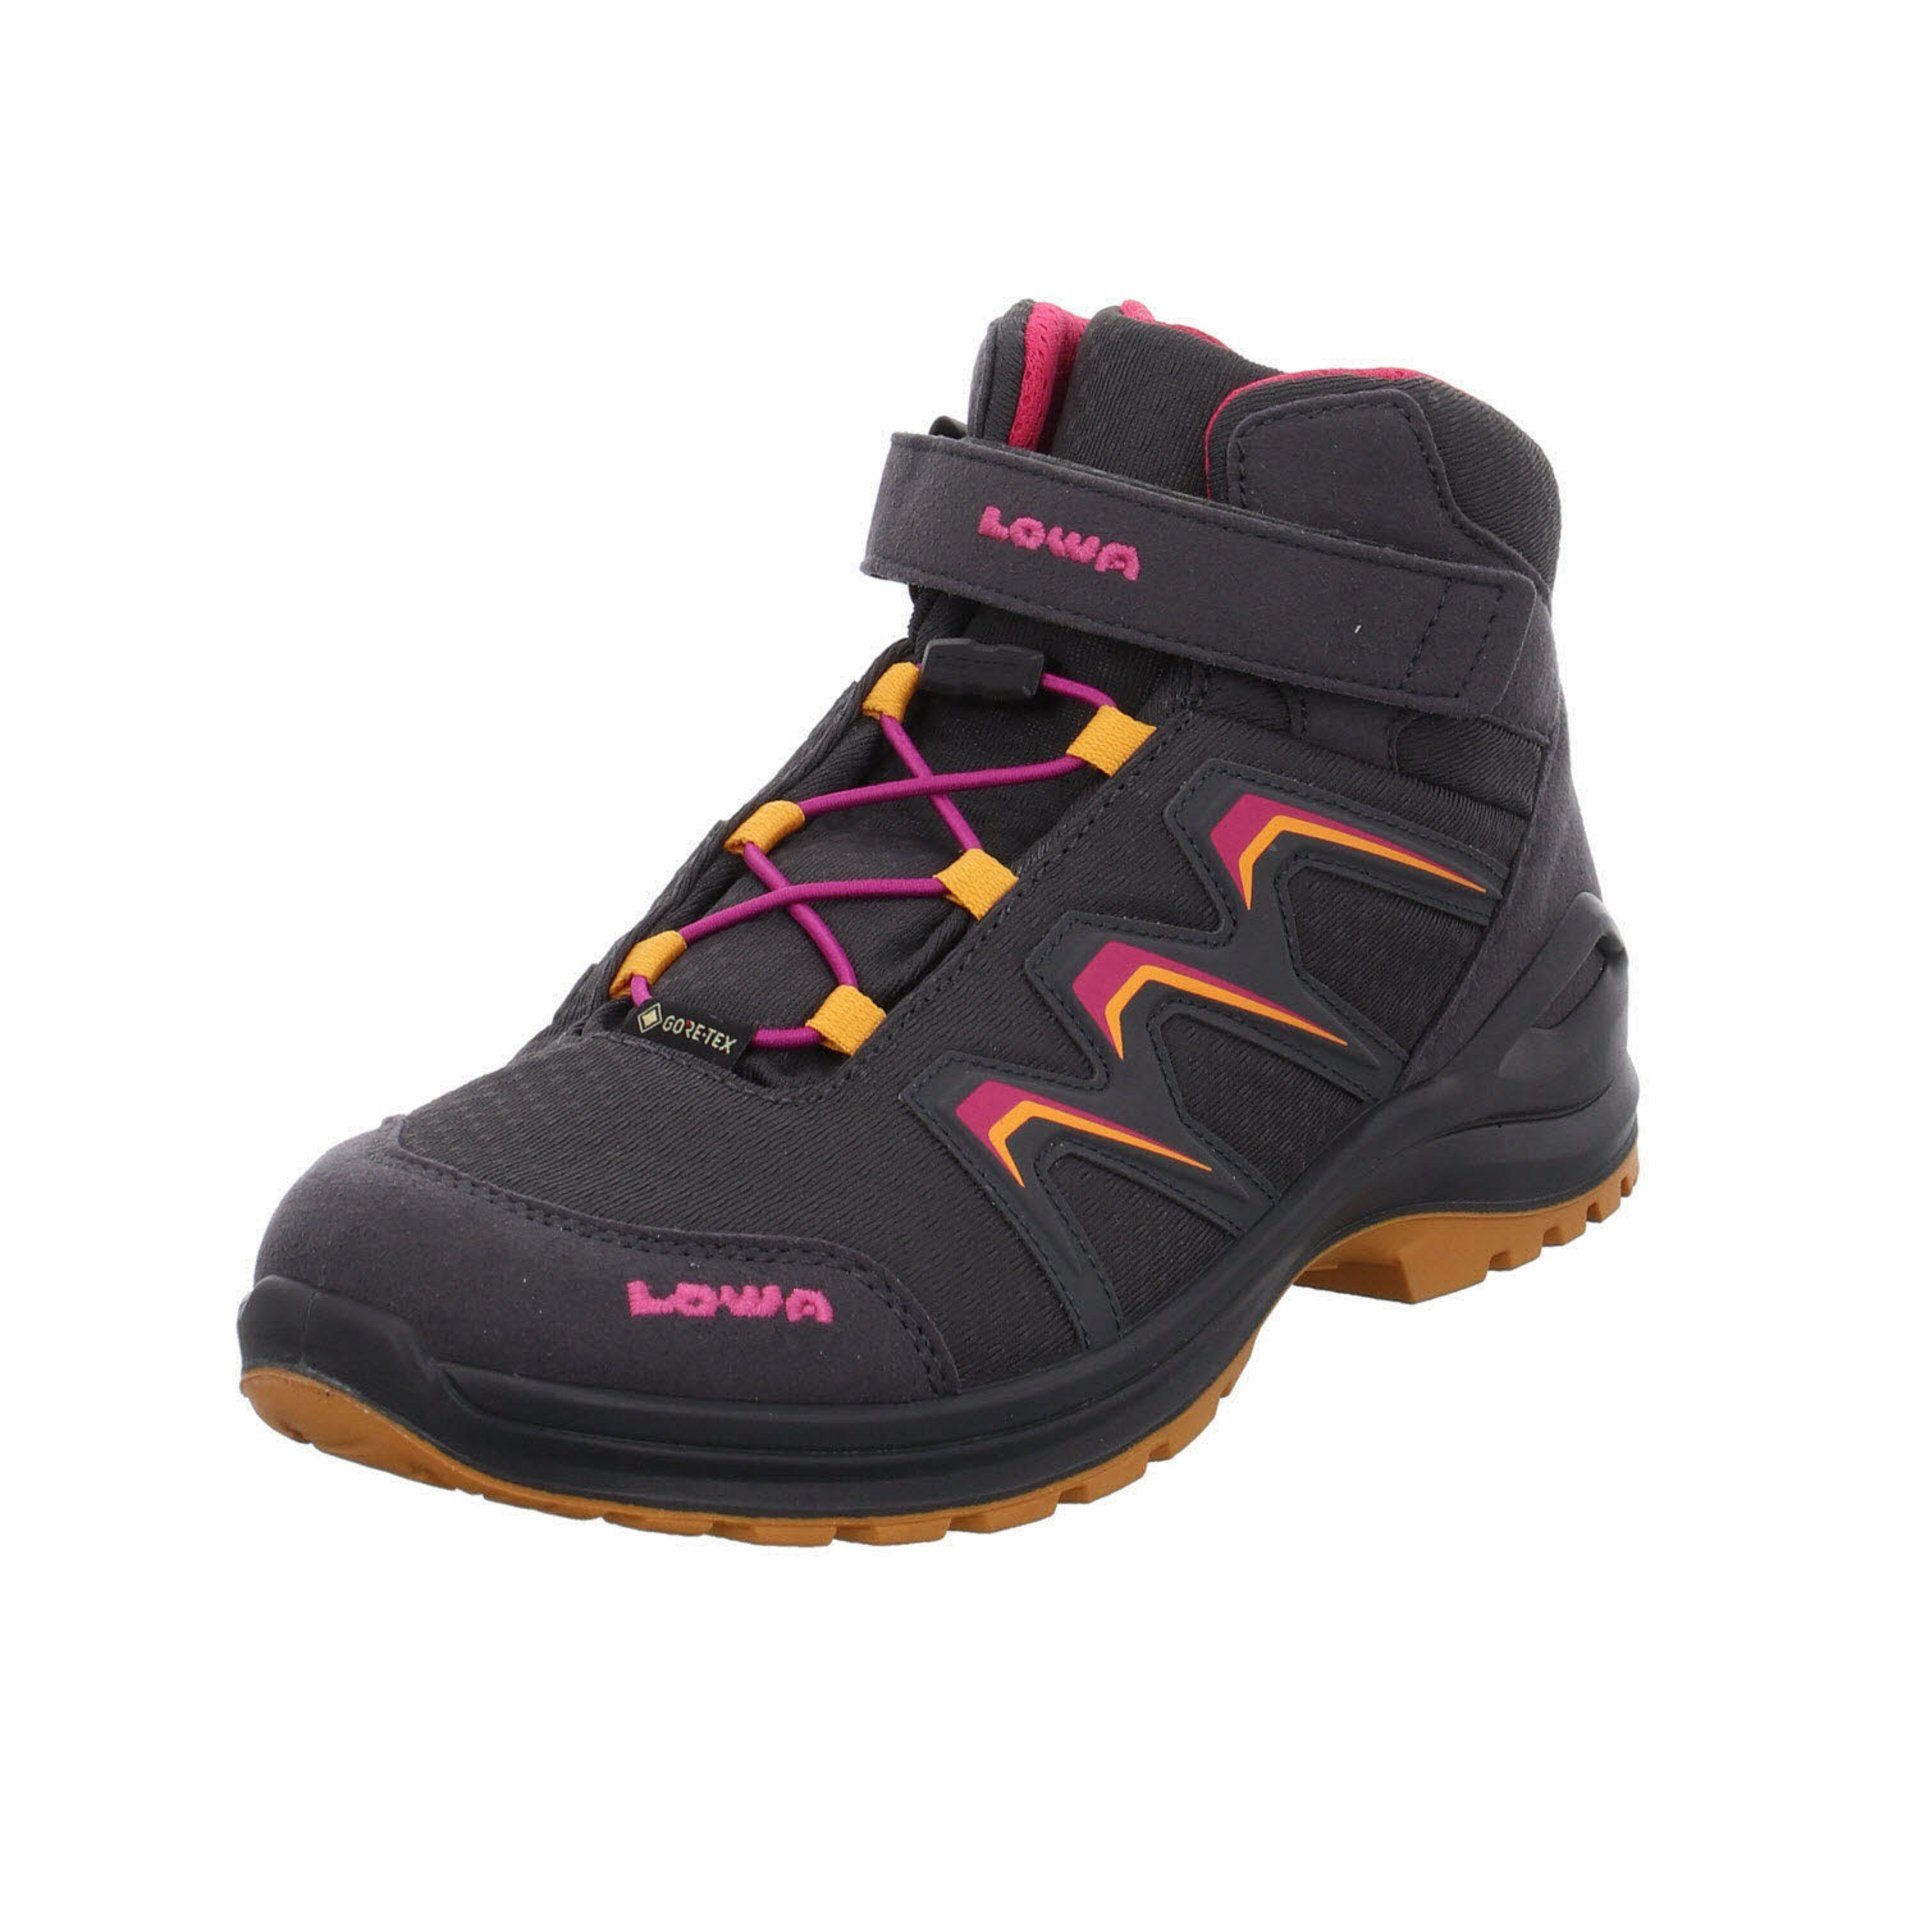 Jungen Warm Stiefel Boots Stiefel GTX Textil Maddox GRAPHIT/MANDARINE Lowa Schuhe